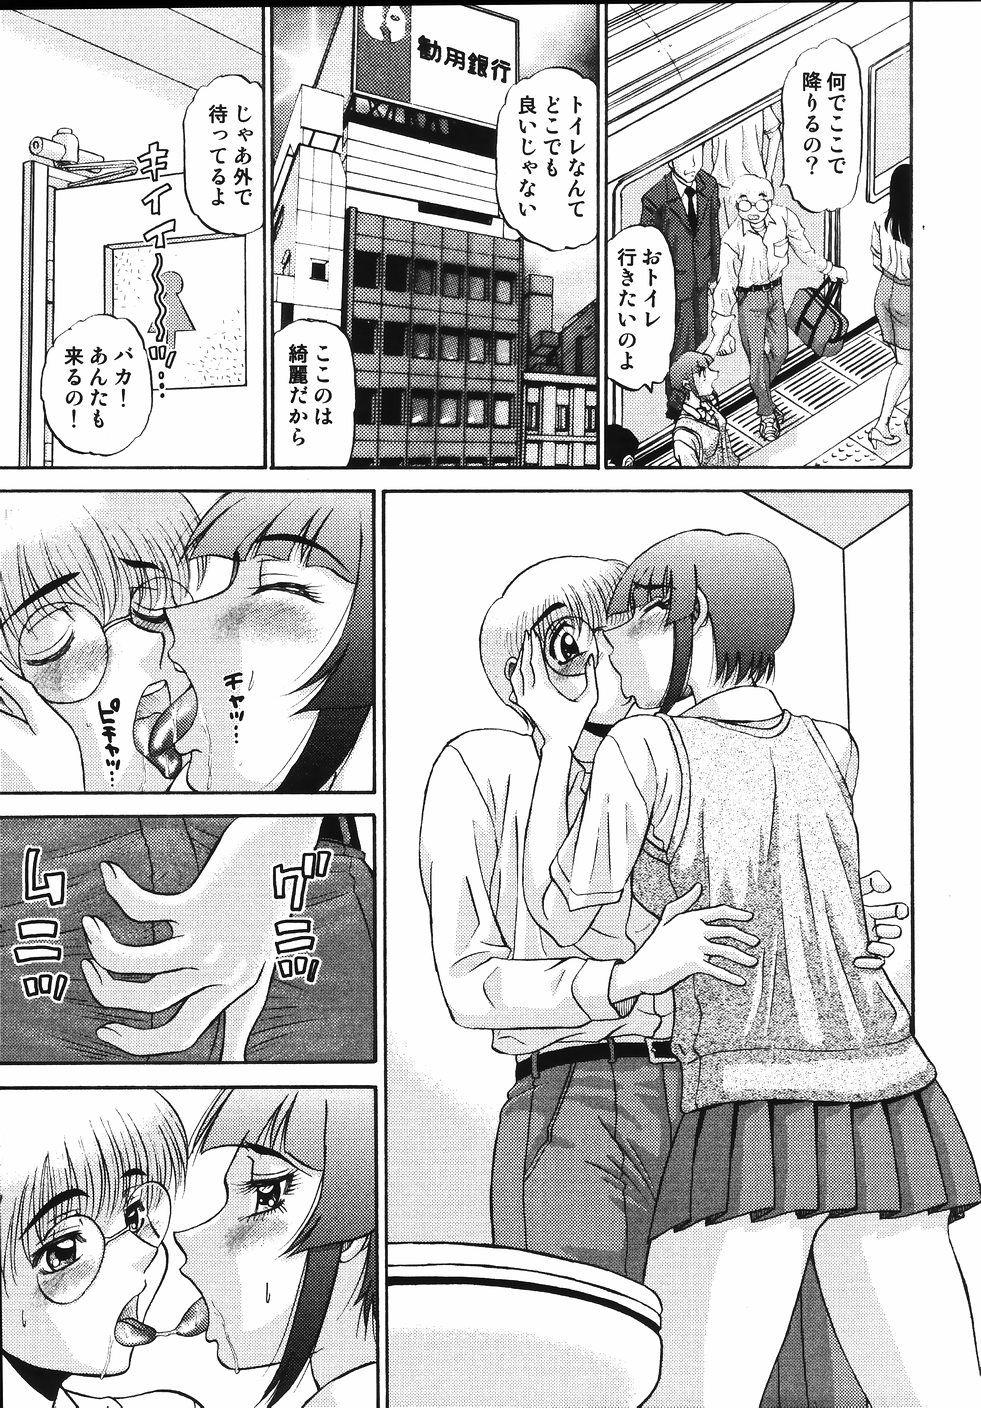 [PJ-1] Nozomi 2 page 11 full